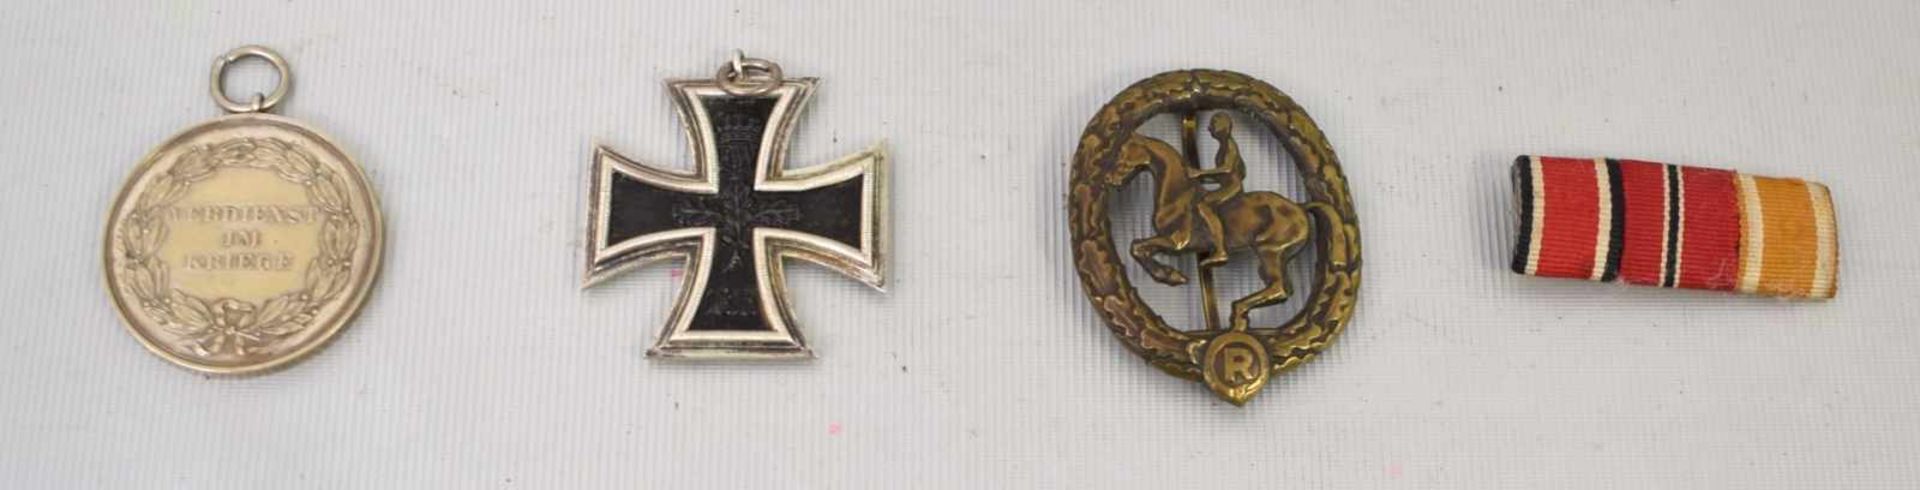 Konvolut Orden und Abzeichenrunde Medaille von 1914, Reiterabzeichen, EK II und kleine Spange, um